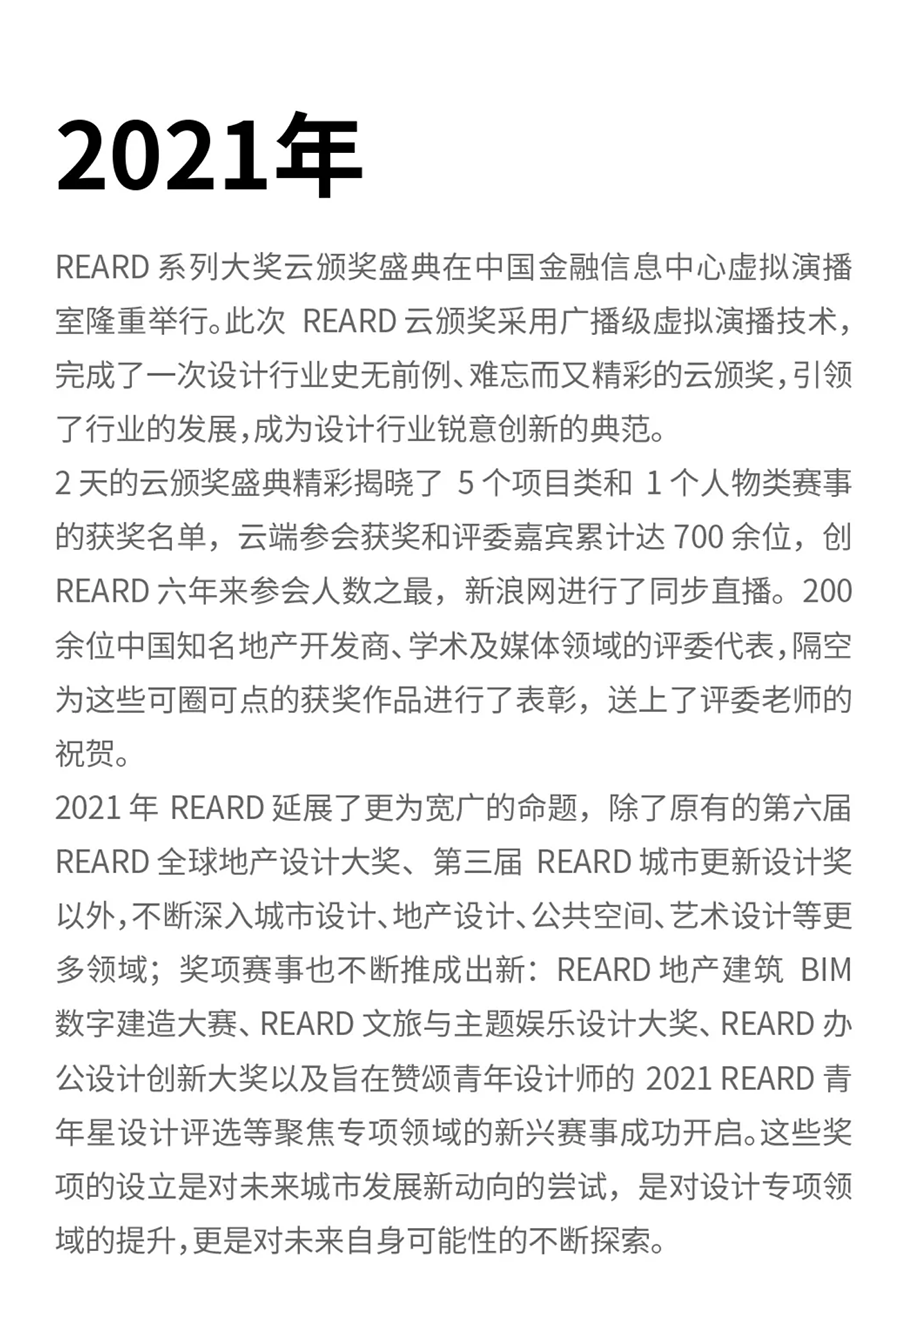 2022年，第四届REARD城市更新设计奖启动啦！共同铸就中国城市更新未来发展之路_0009_图层-10.png